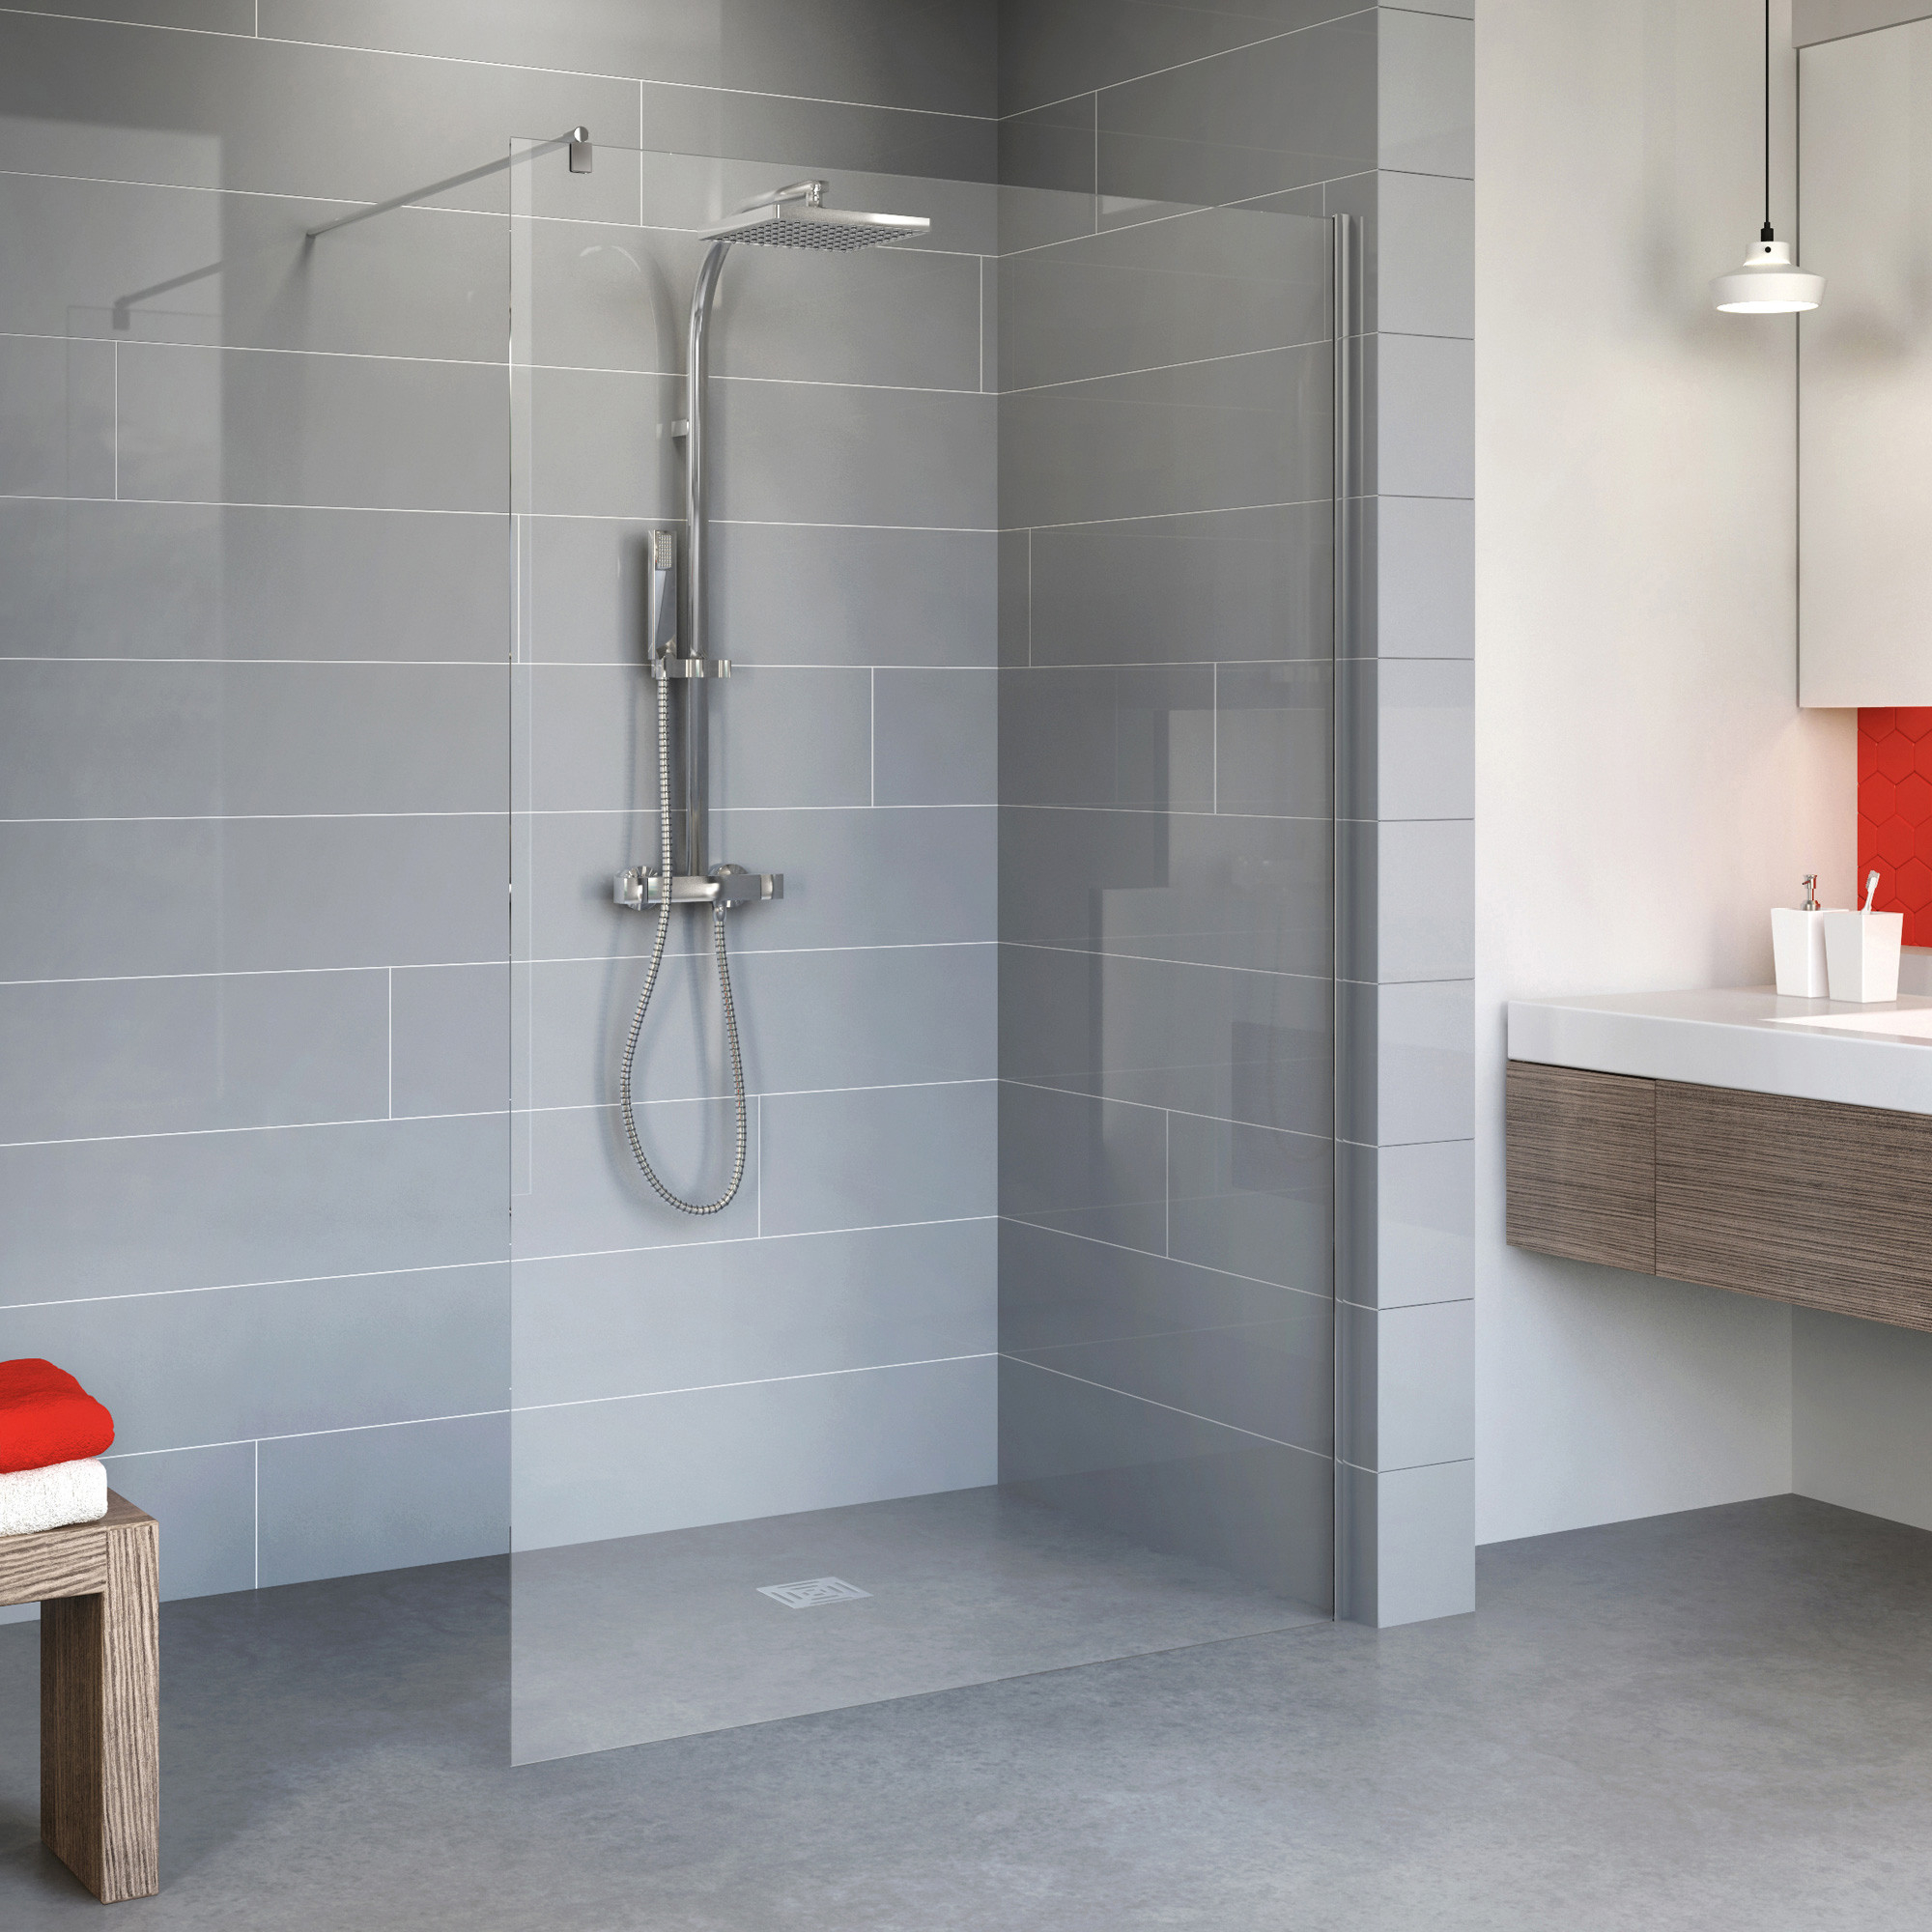 Was Kostet Ein Bad? – Kostenrechner &amp; Tipps | Obi pertaining to Badezimmer Modern Preise